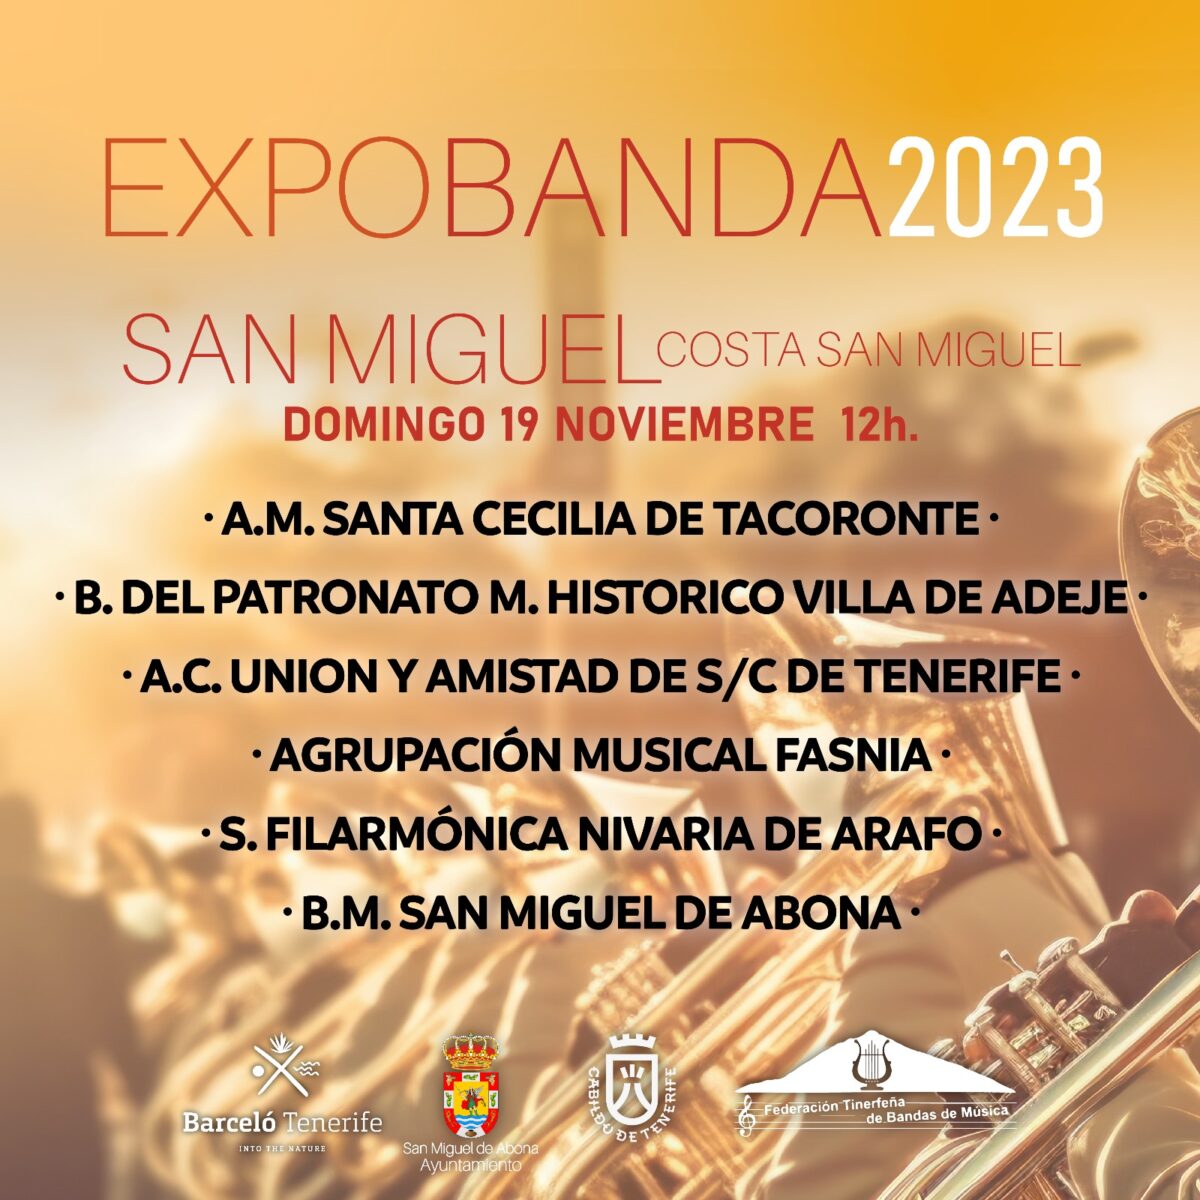 La Costa de San Miguel de Abona acoge EXPOBANDA 2023